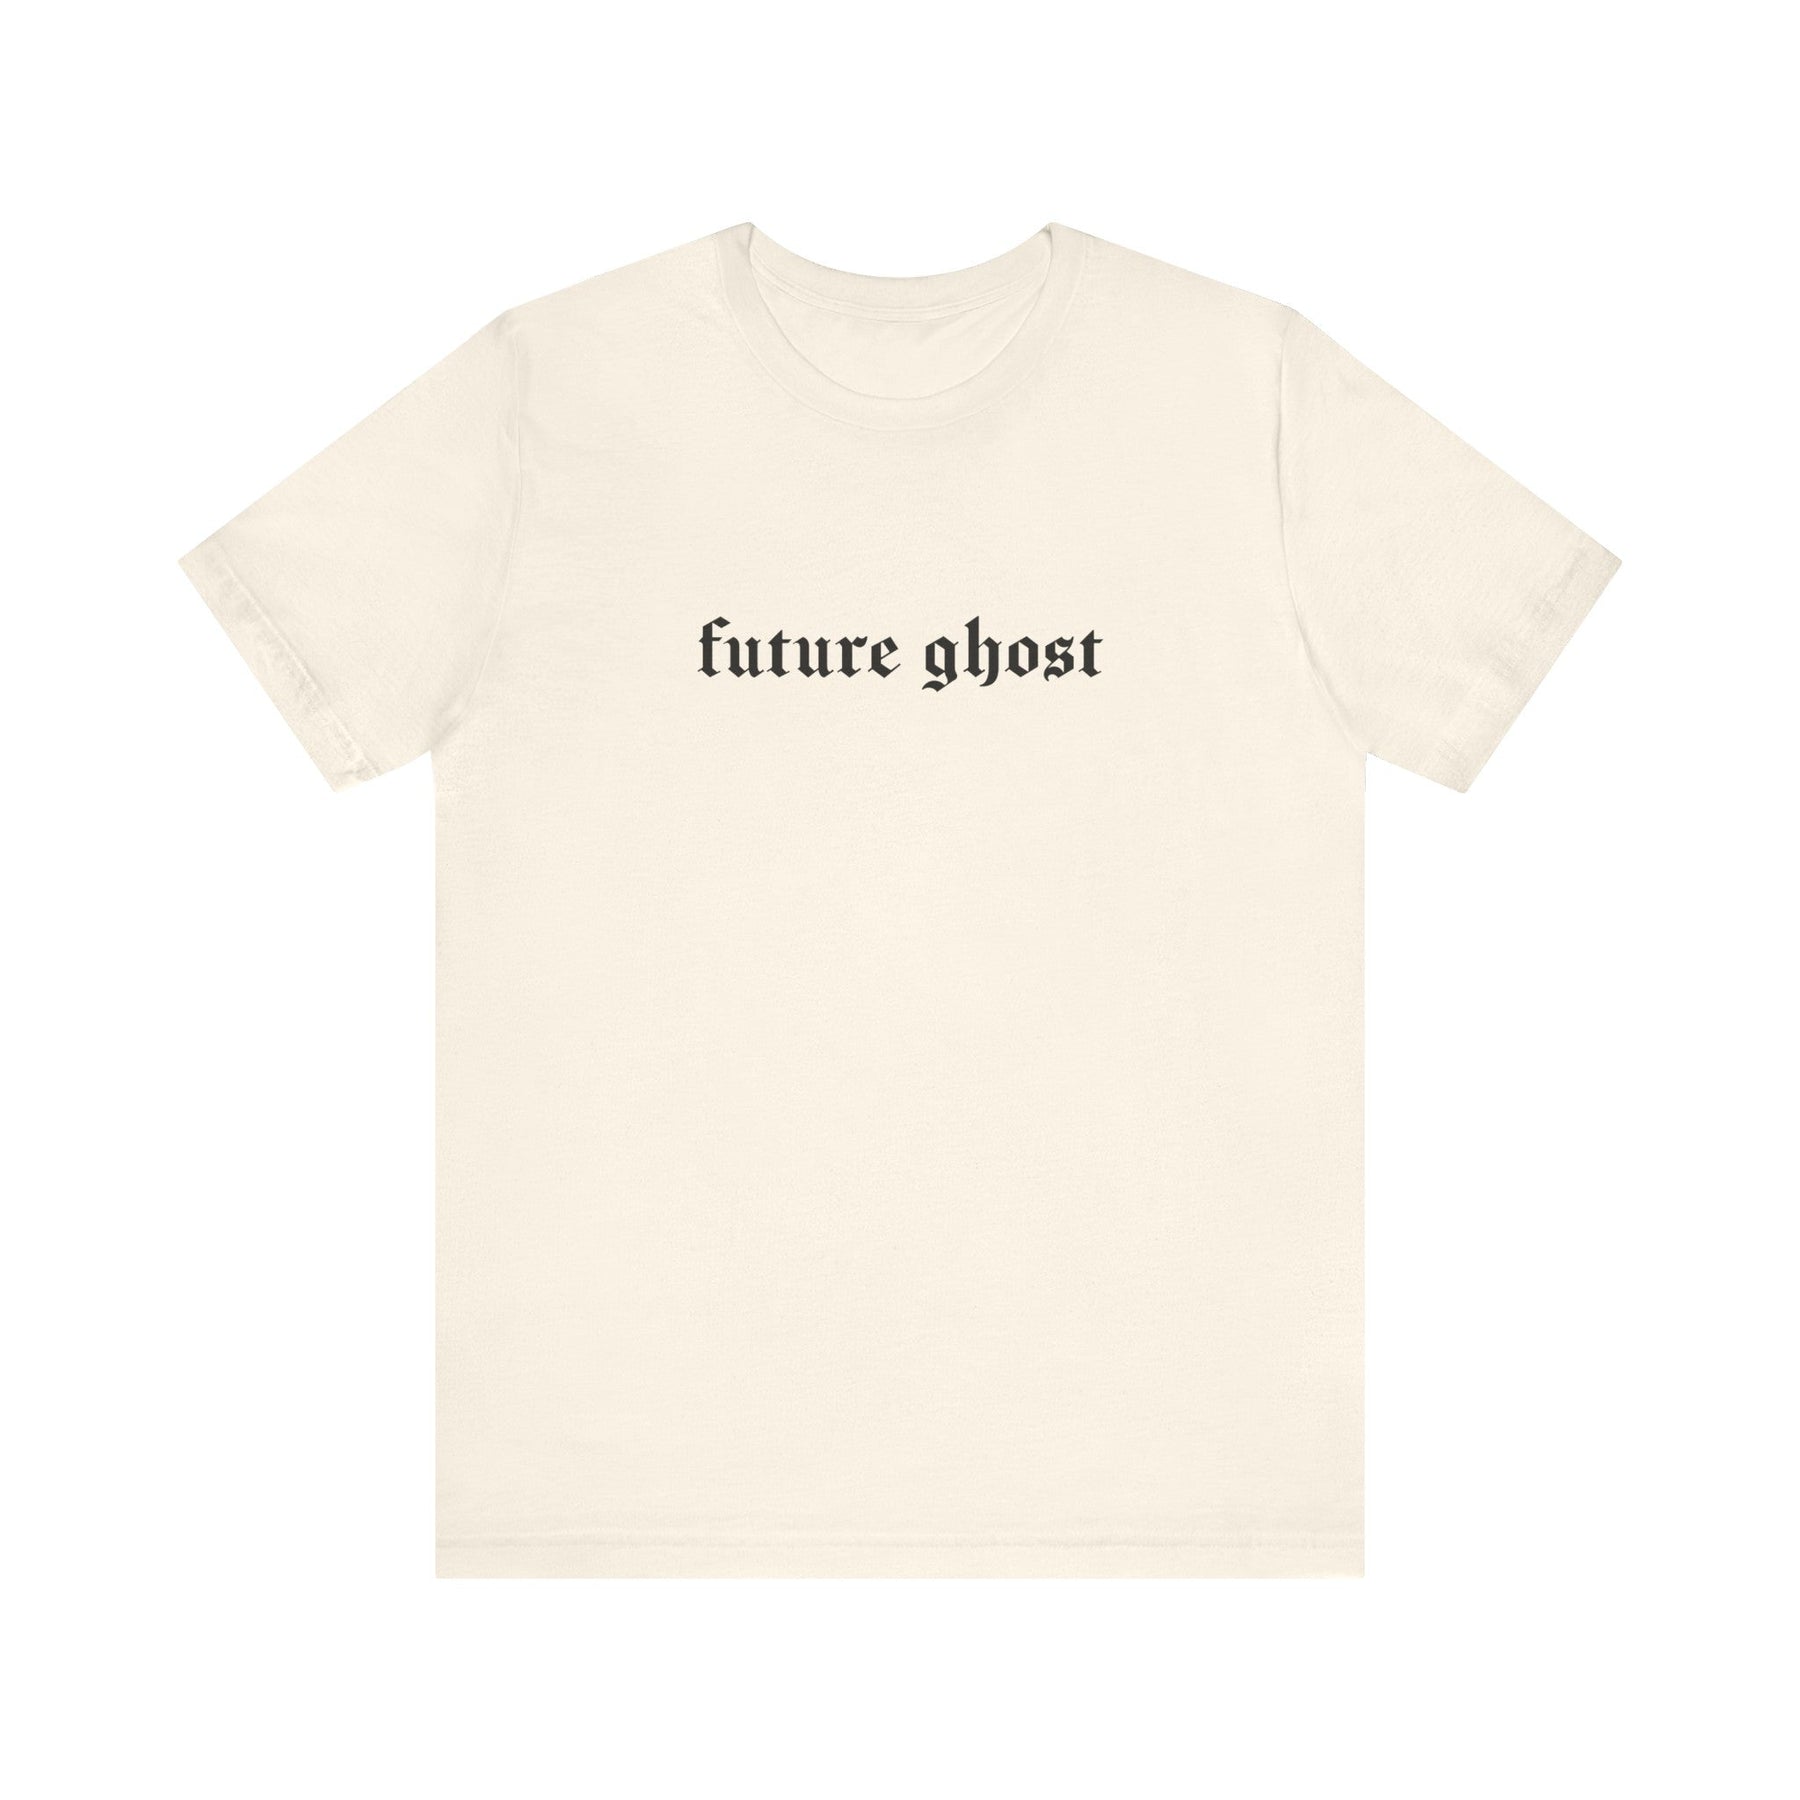 Future Ghost Gothic T - Shirt - Goth Cloth Co.T - Shirt61316675584453219854